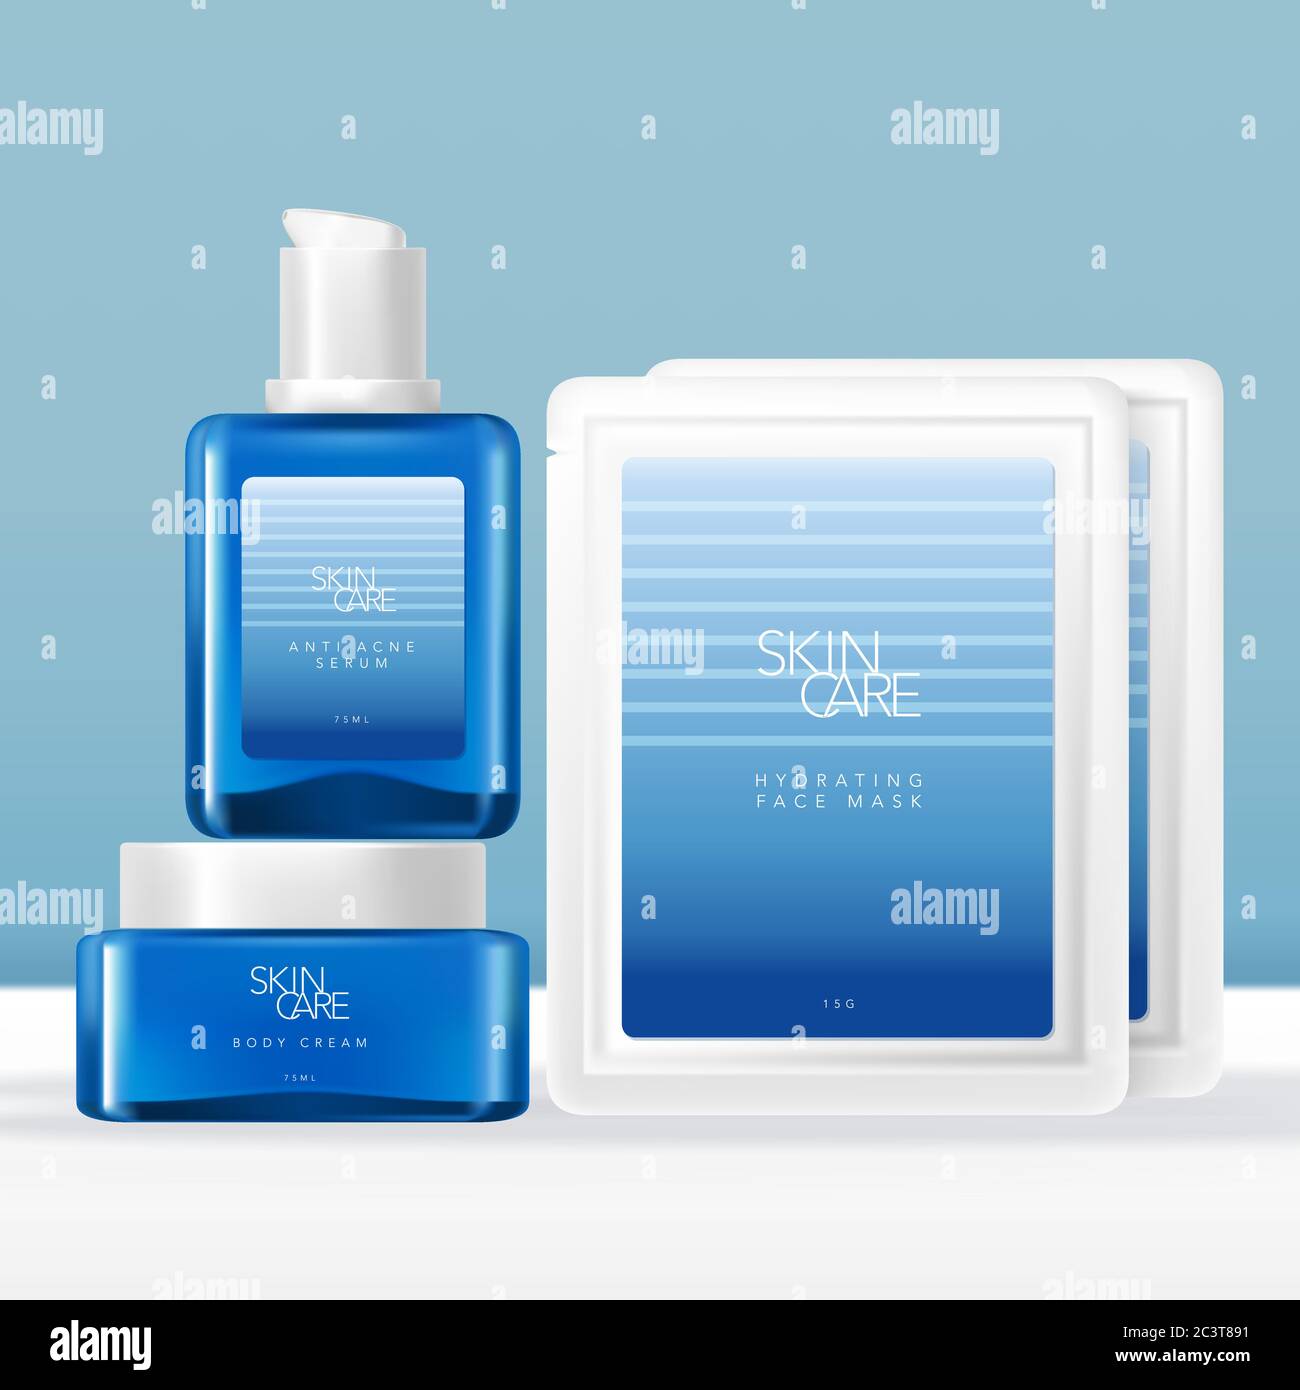 Vector Glas Serum Flasche, Gesichtscreme Glas & Sheet Maske Paket Verpackung Set mit Sommer Ozean Gradient Blau Design Stock Vektor